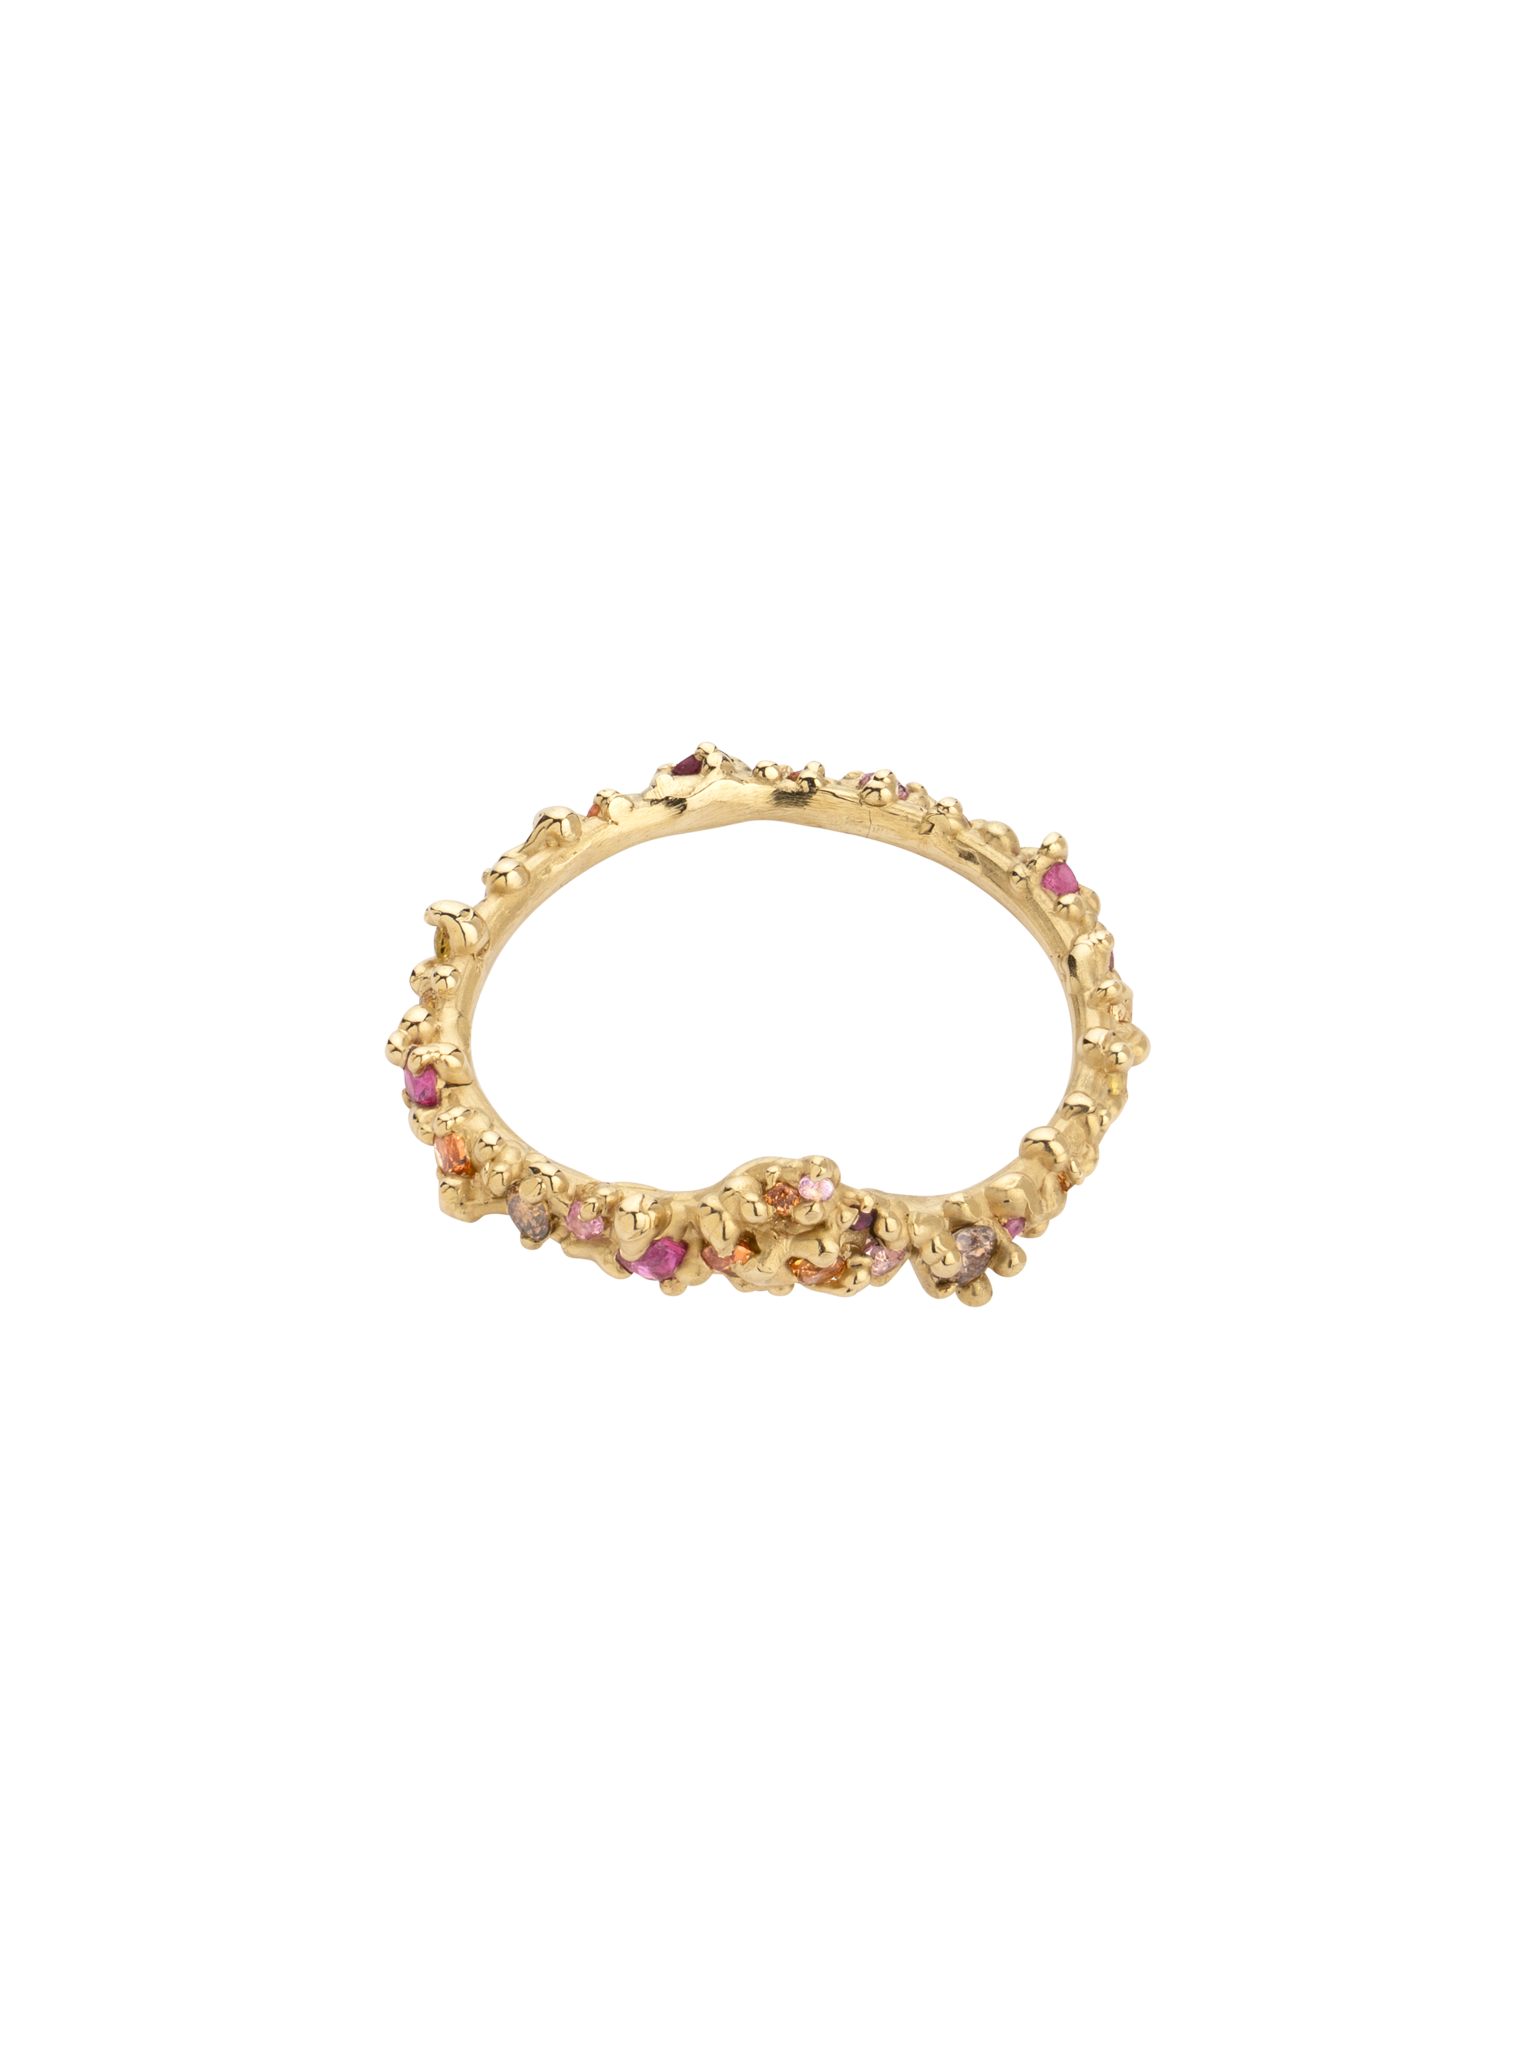 'Tiara' autumn gemstone ring